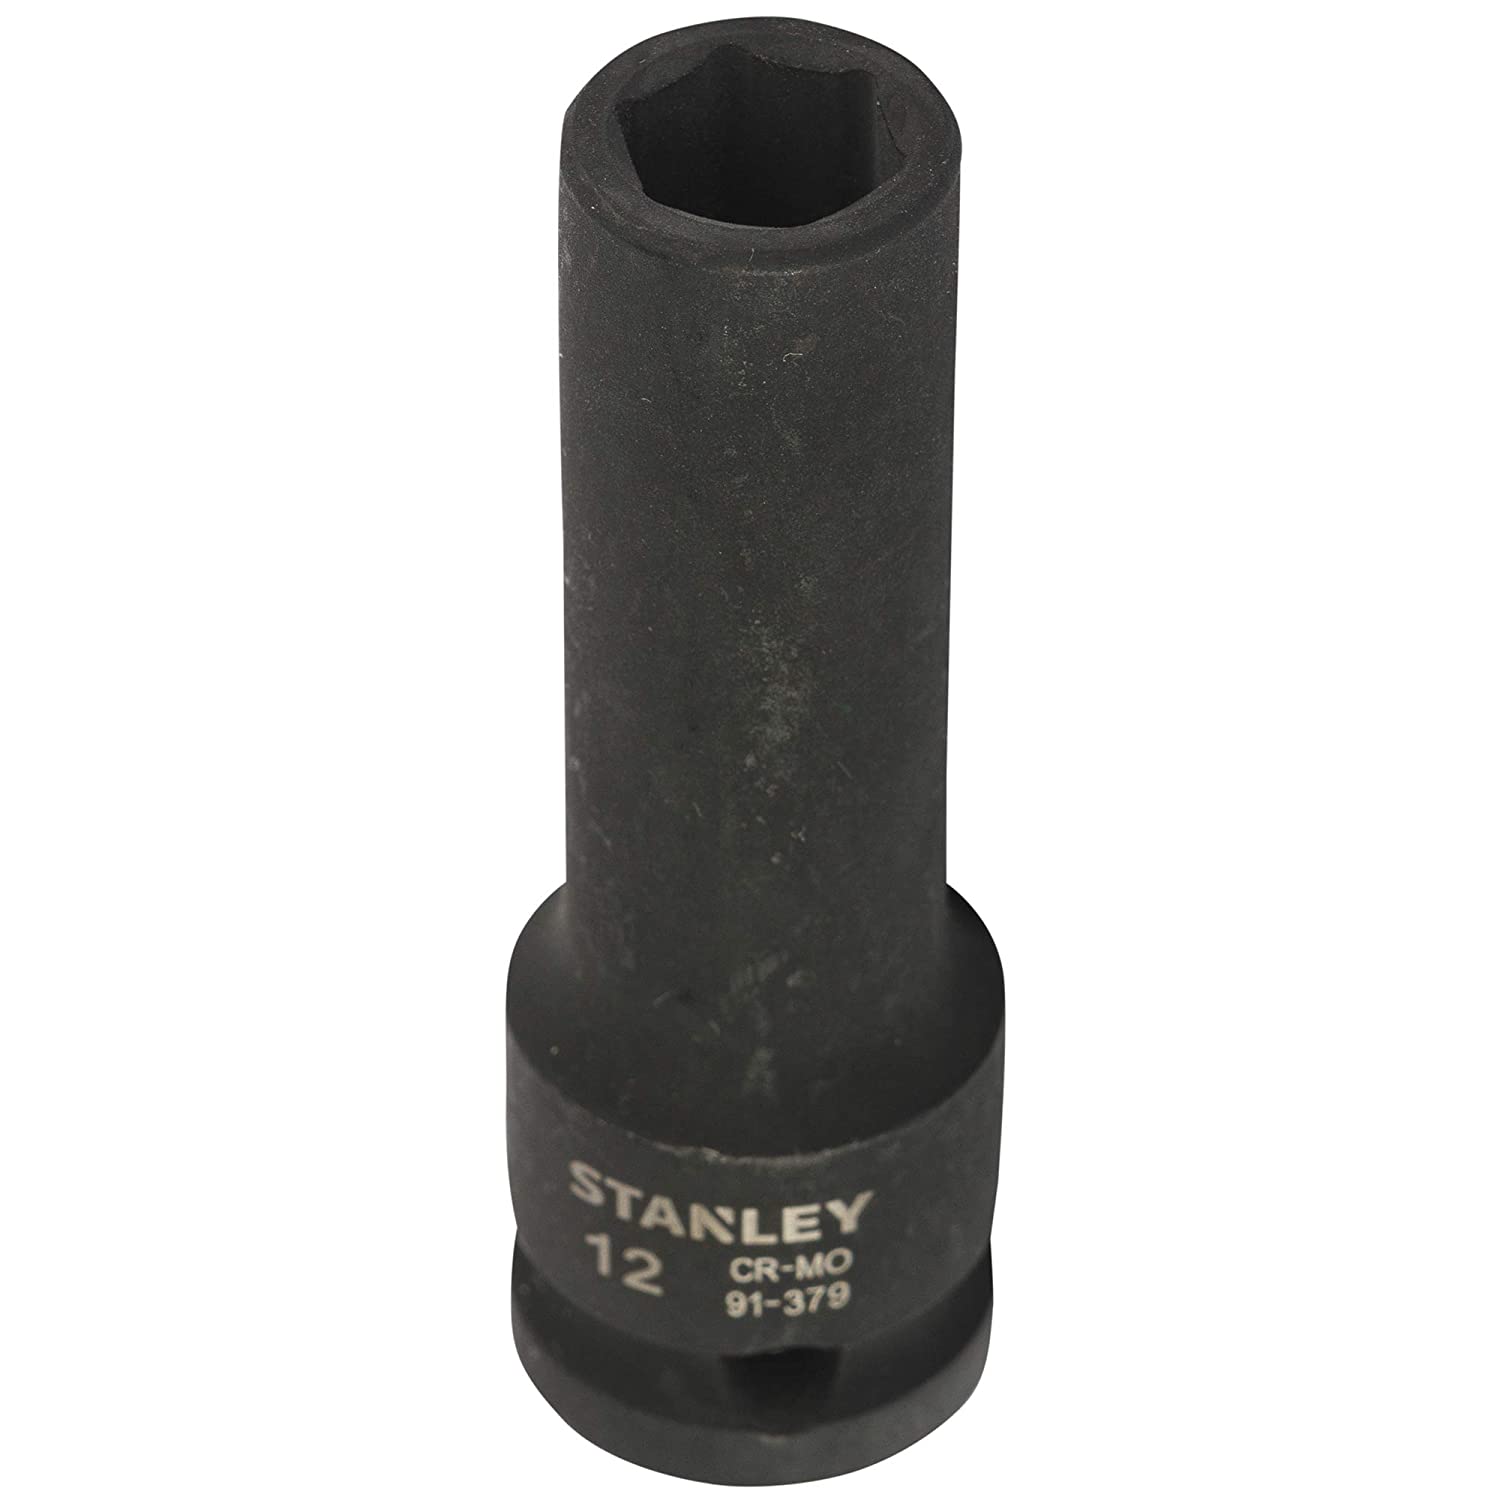 Hình ảnh 4 của mặt hàng Đầu tuýp 1/2" impact deep socket 12mm Stanley STMT91379-8B